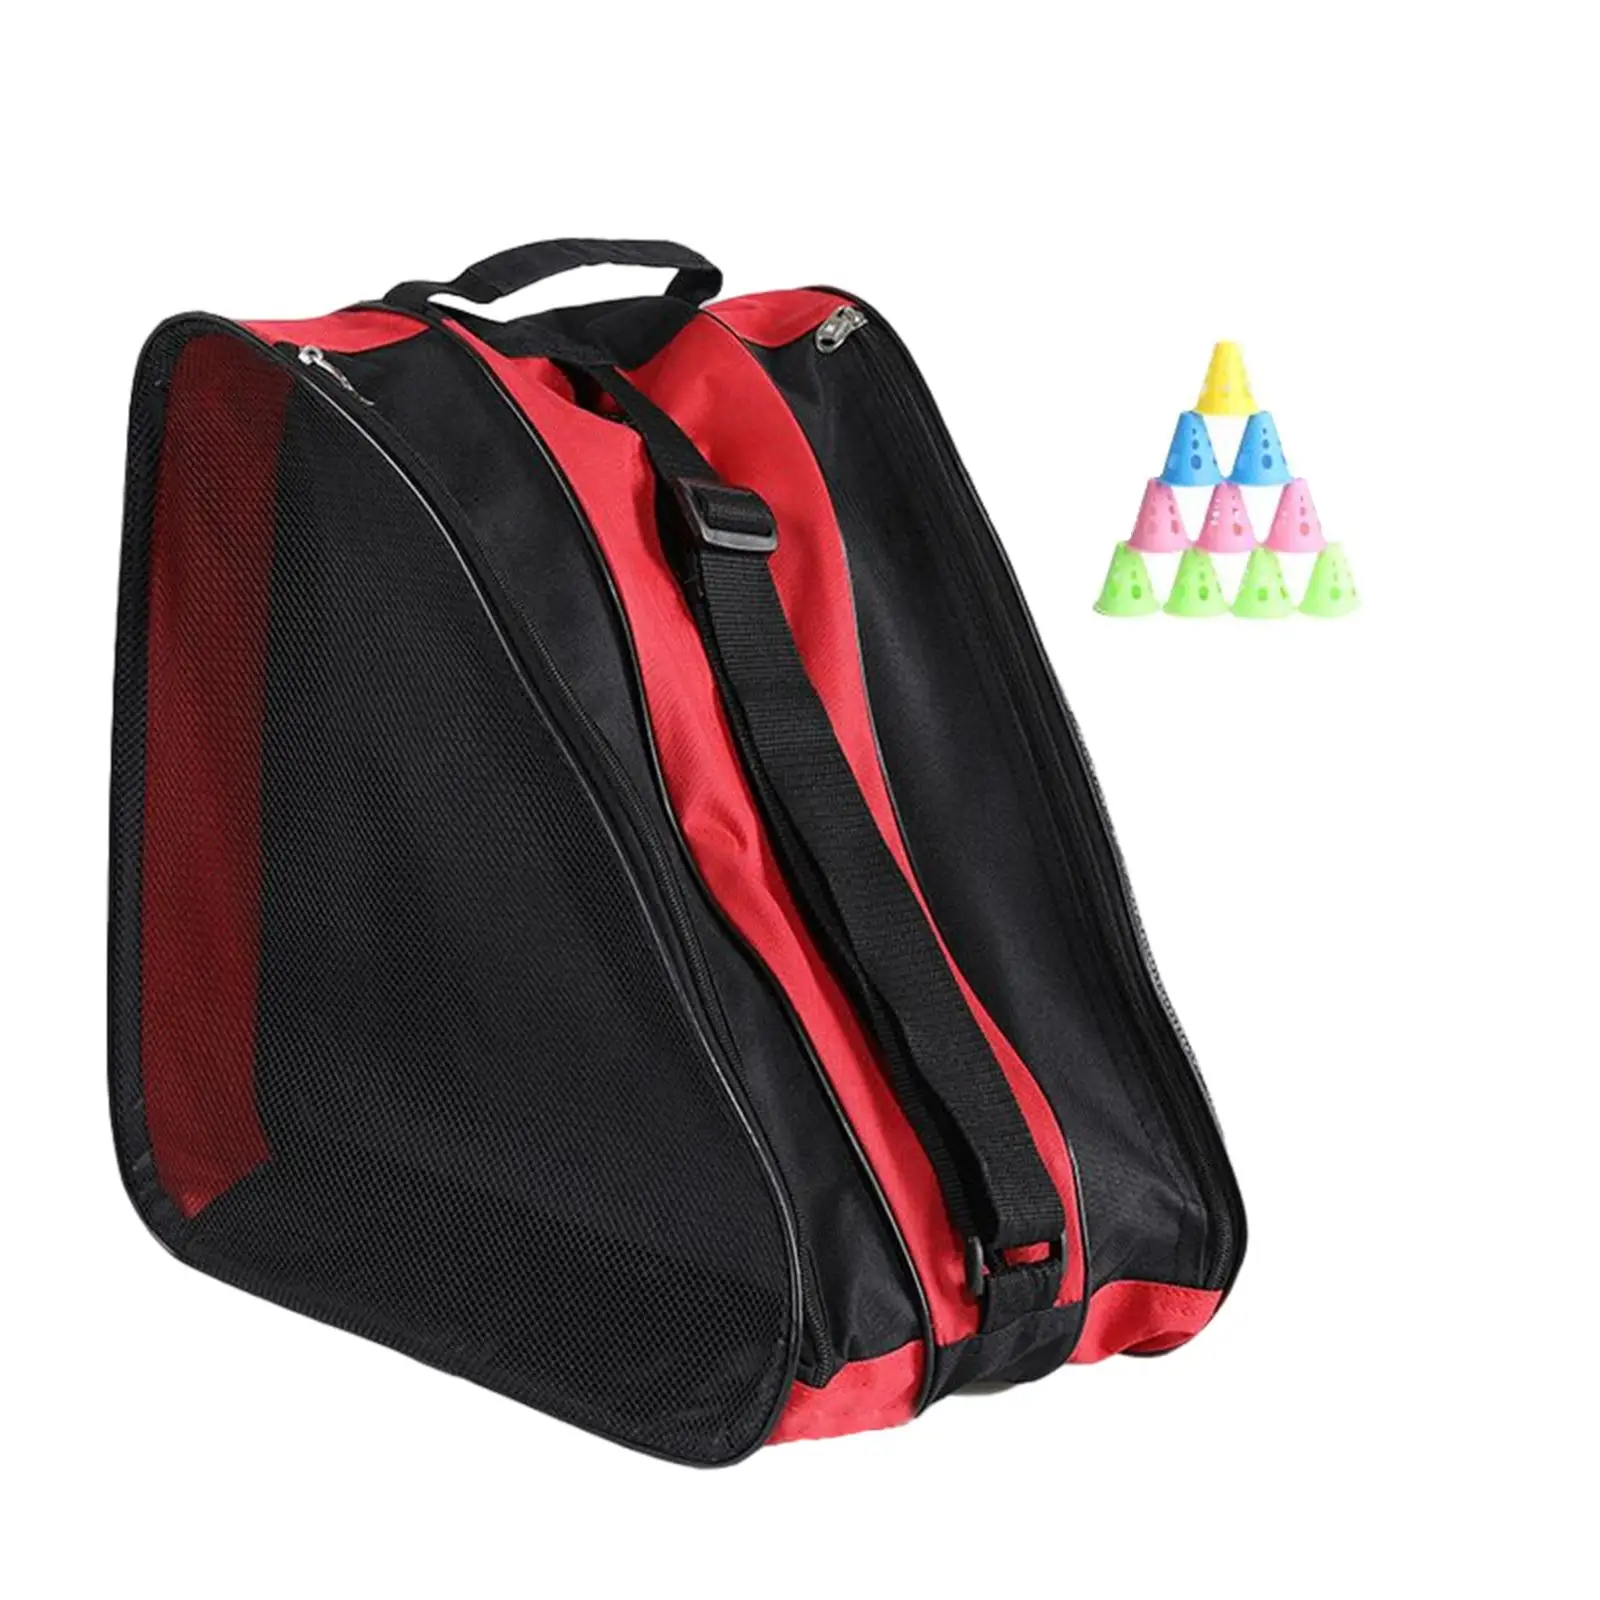 Roller Skates Bag Breathable Ice Skate Bags Ski Sports Shoulder Bag Large Capacity 3 Layer Triangle Skate Bag for Girls Boys